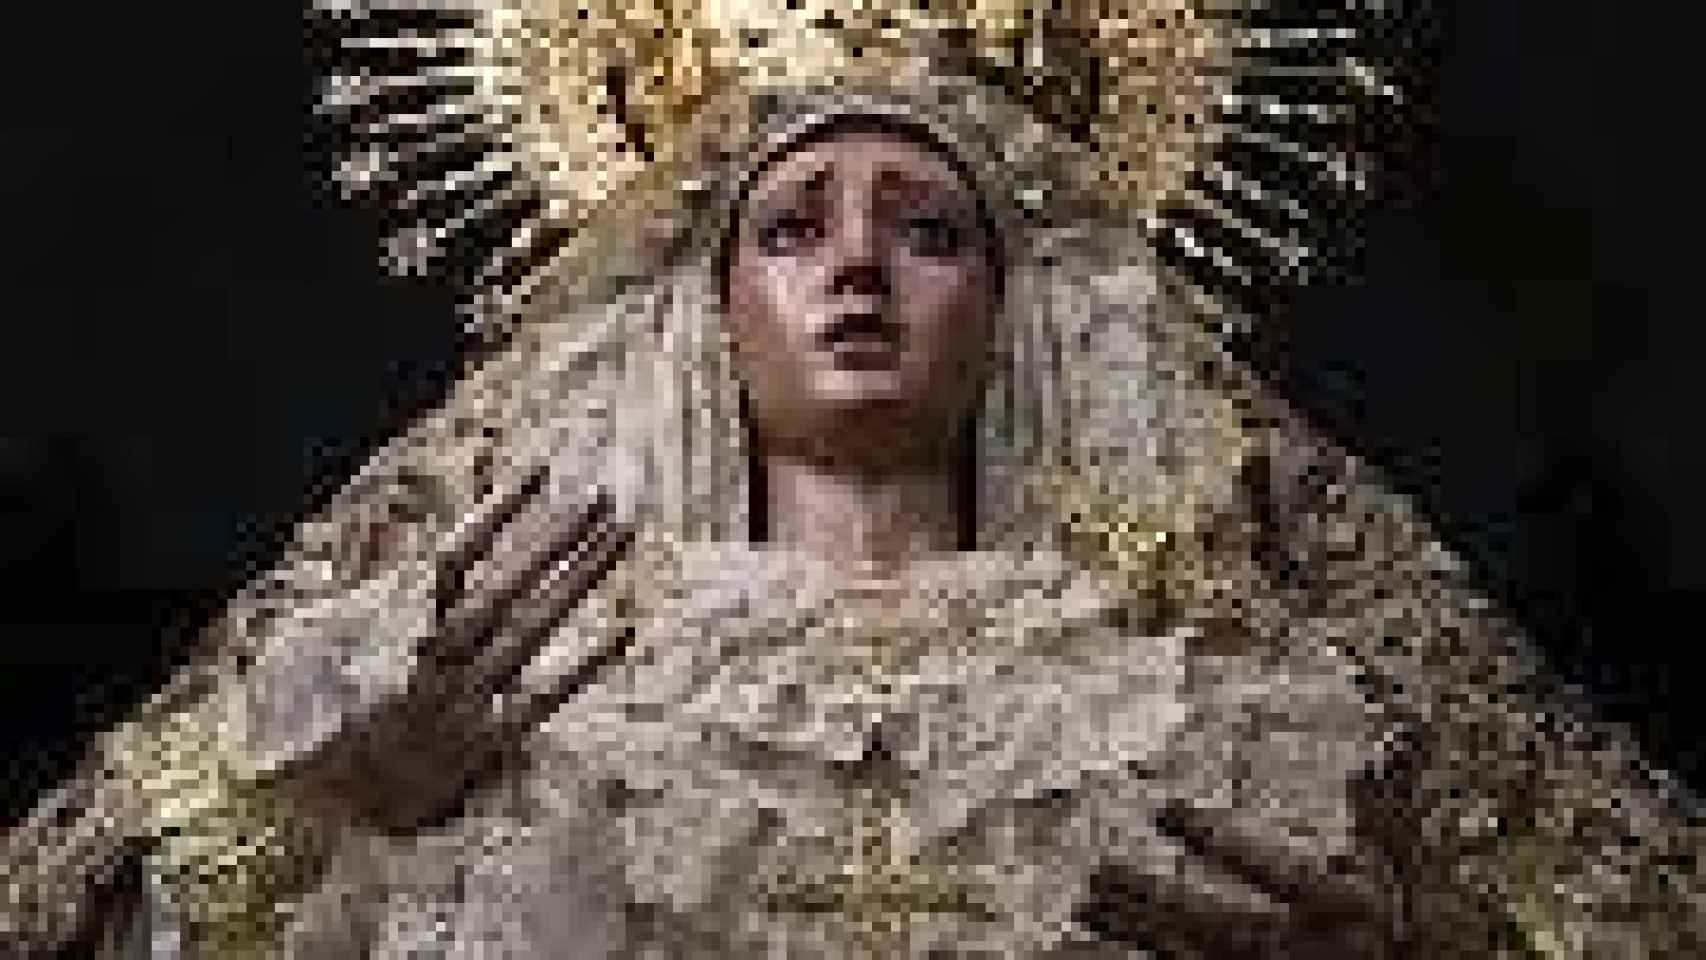 La Virgen de Montserrat.